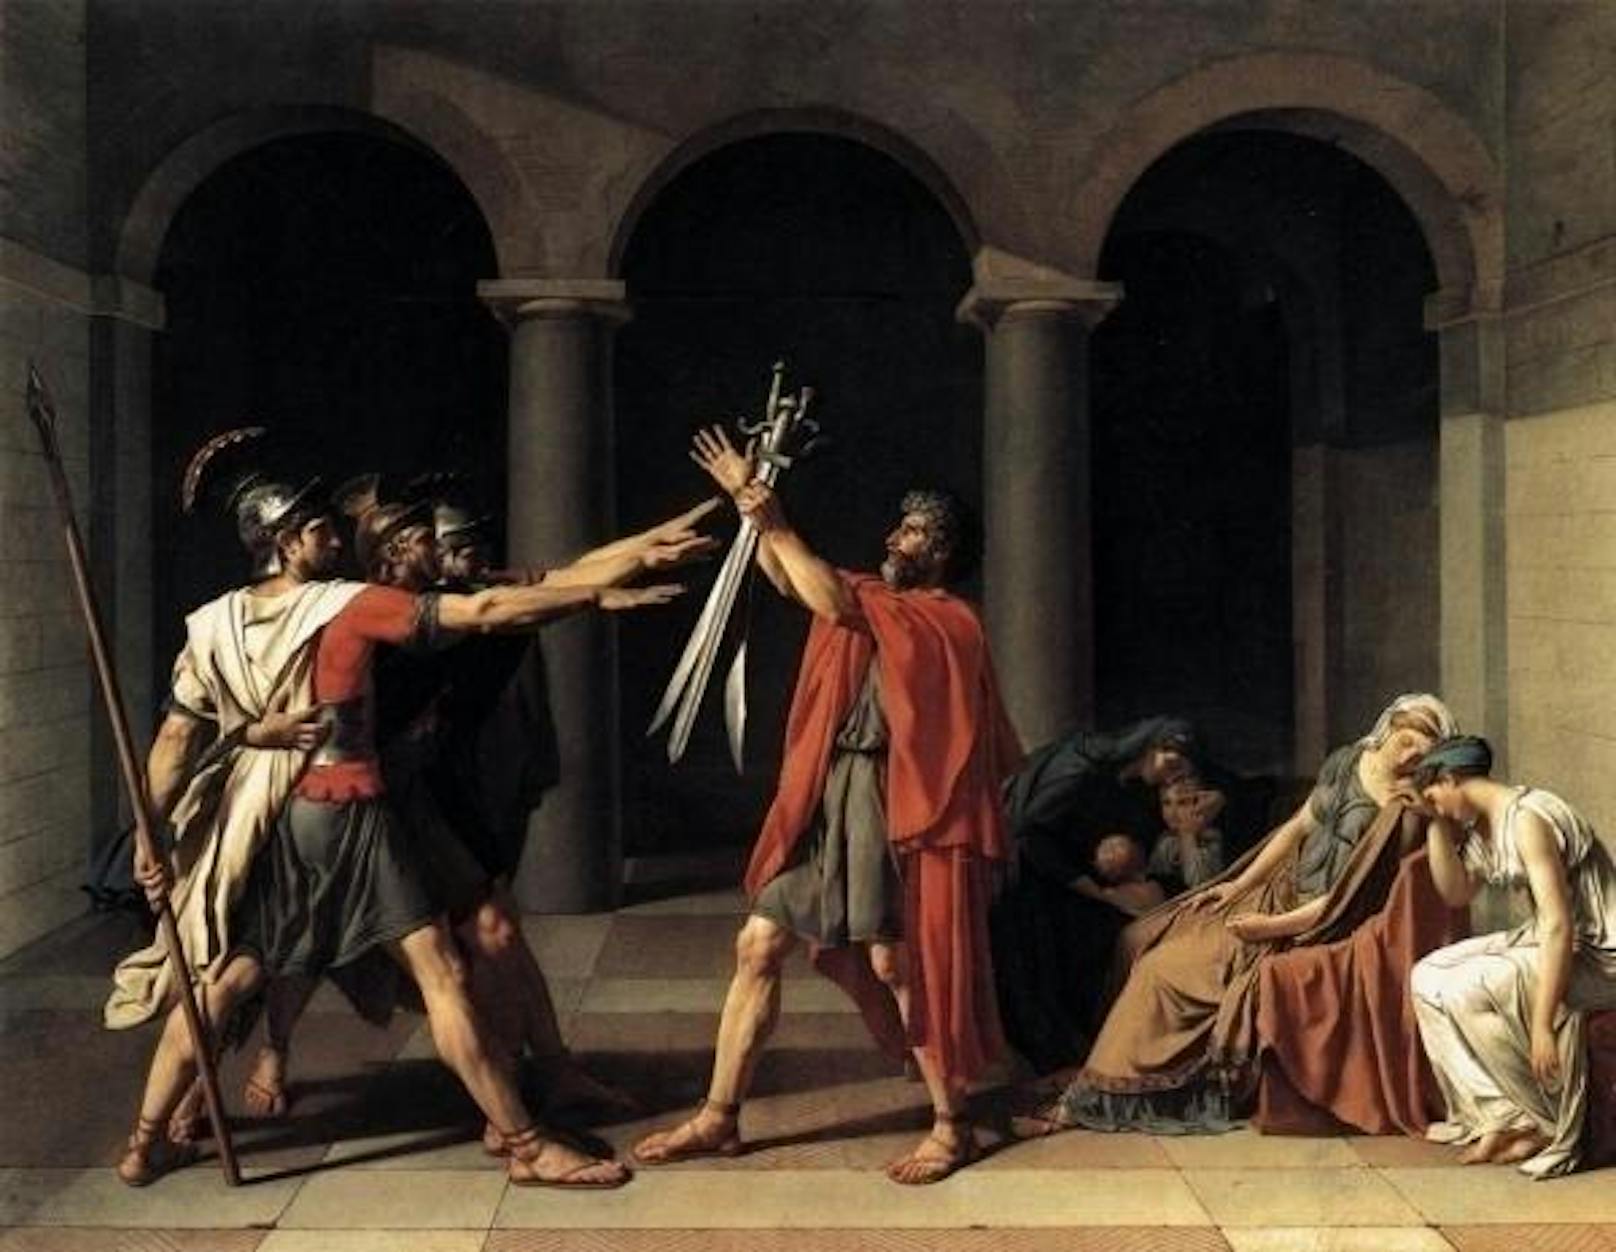 In Wahrheit ist diese Gebärde aber gar nicht römisch. Gemälde wie "Der Schwur der Horatier" (1784) von Jacques-Louis David dürften zur Entstehung dieser Legende beigetragen haben. Das Bild befindet sich heute im Louvre in Paris.